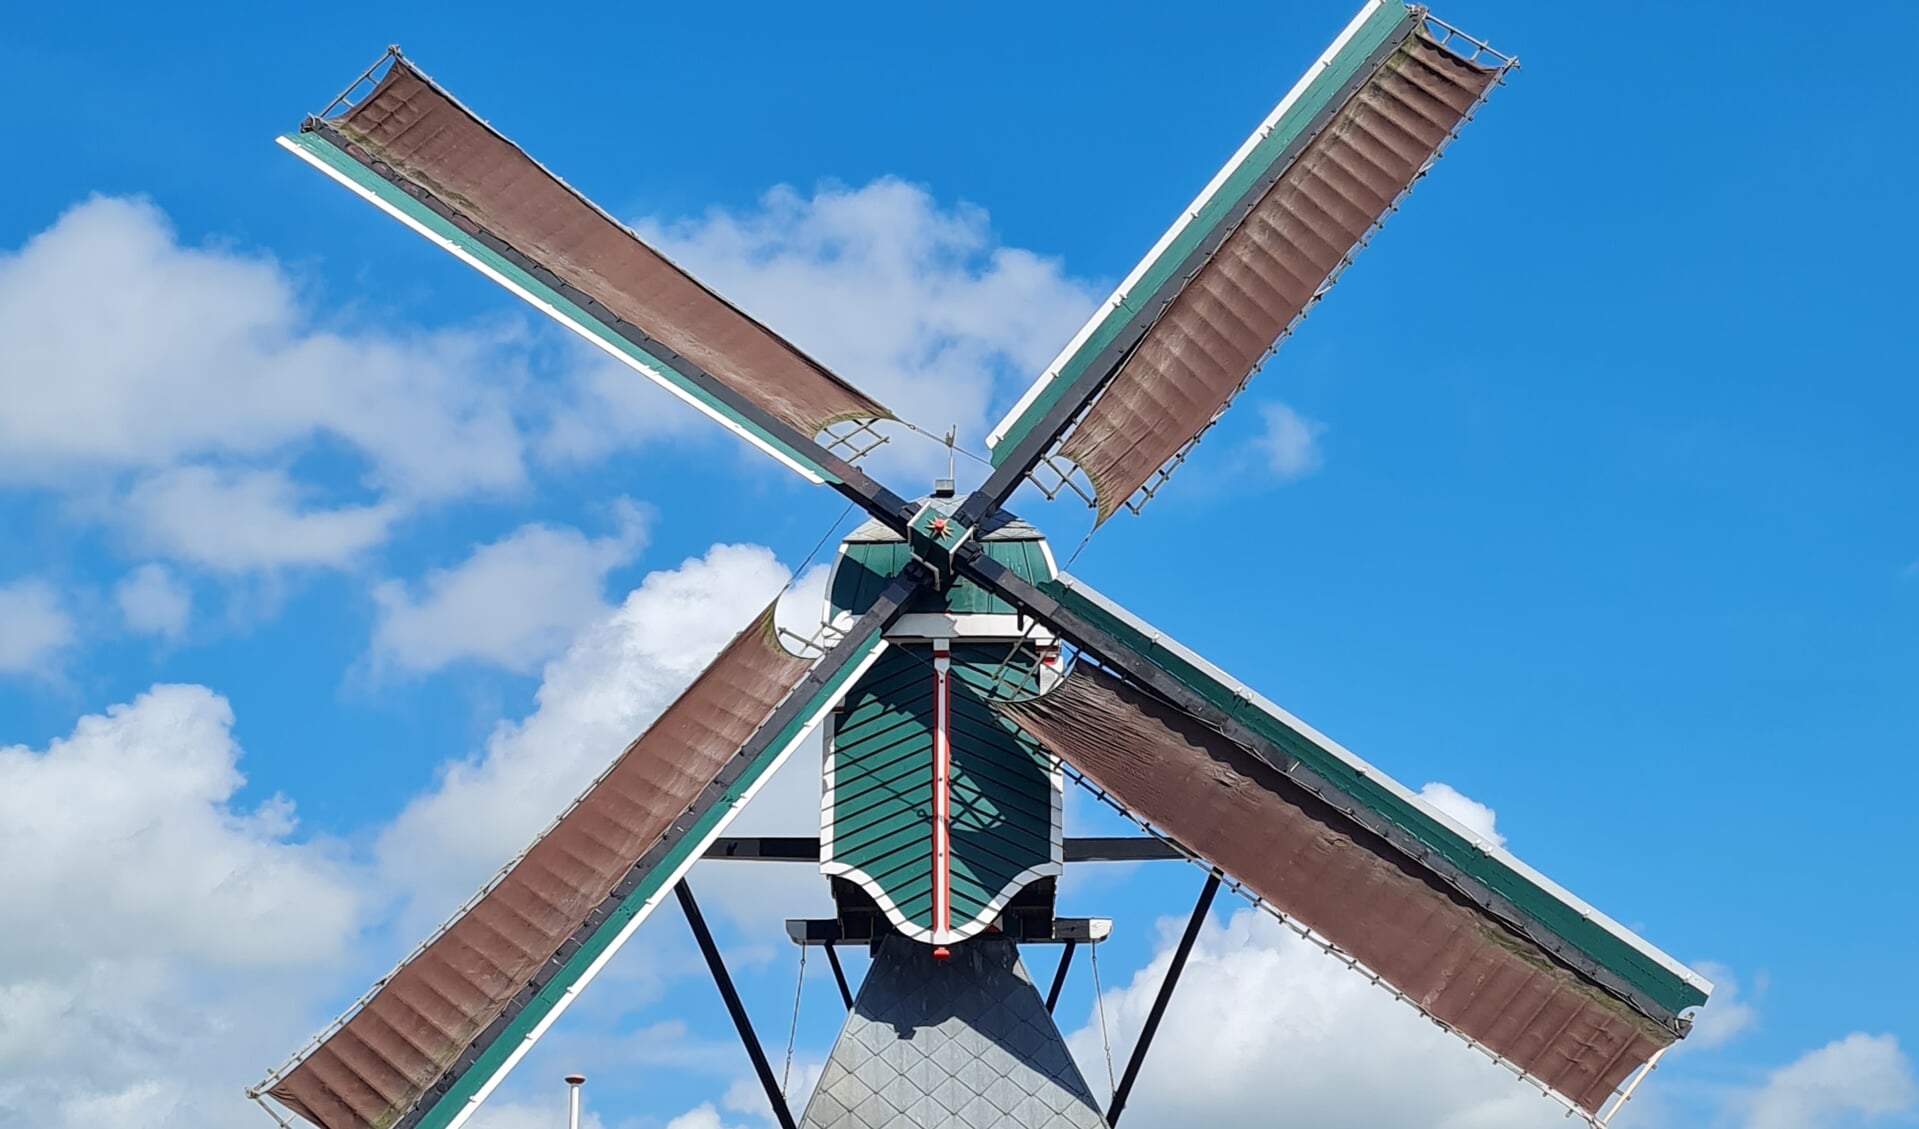 De molen opent haar deuren tijdens Open Monumentendag.